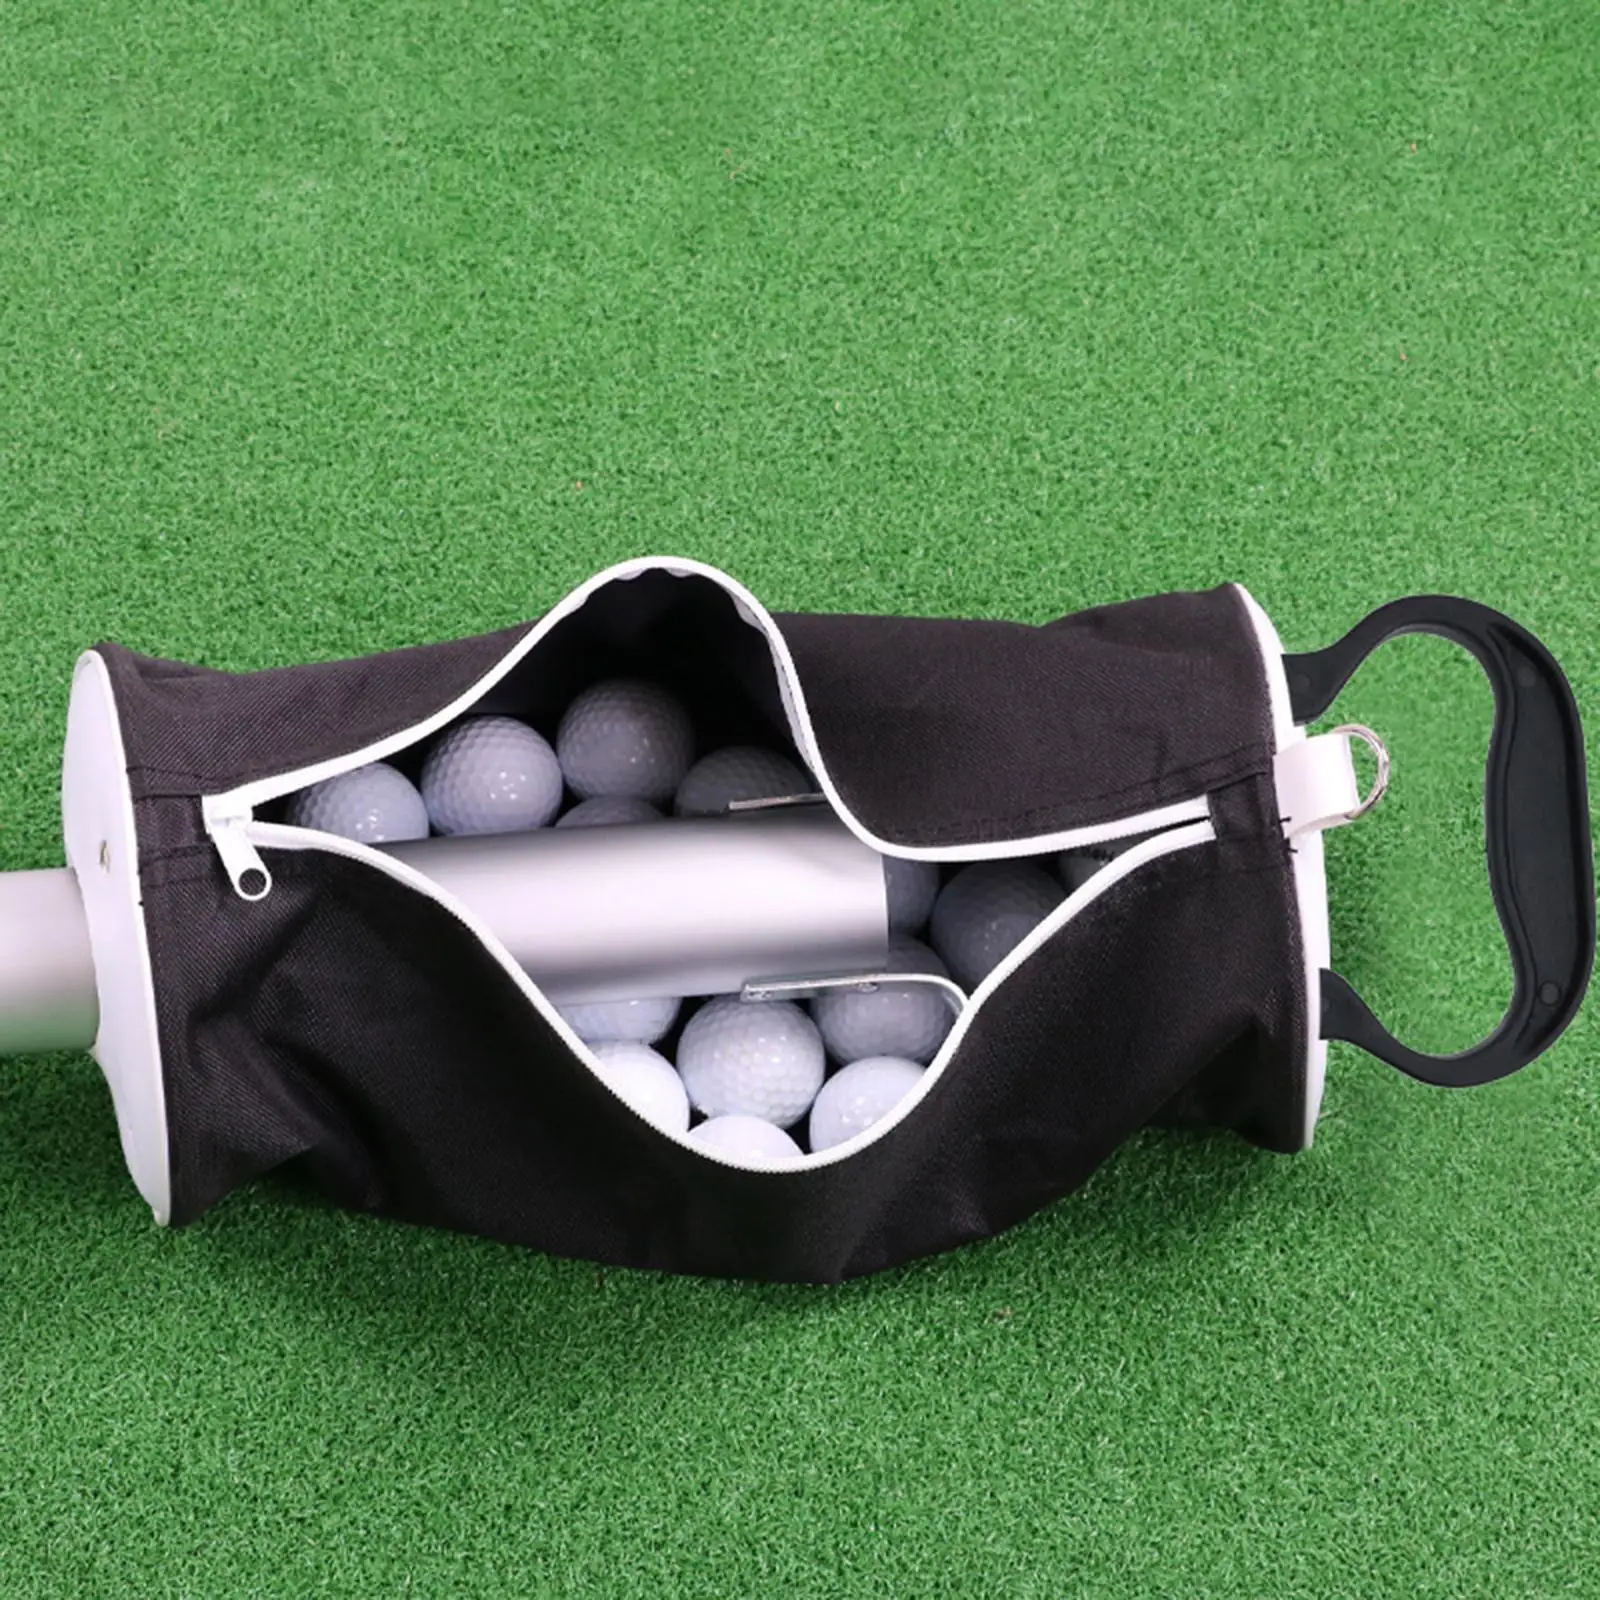 Golf Ball Pick up Portable Balls Grabber Golf Ball Retriever